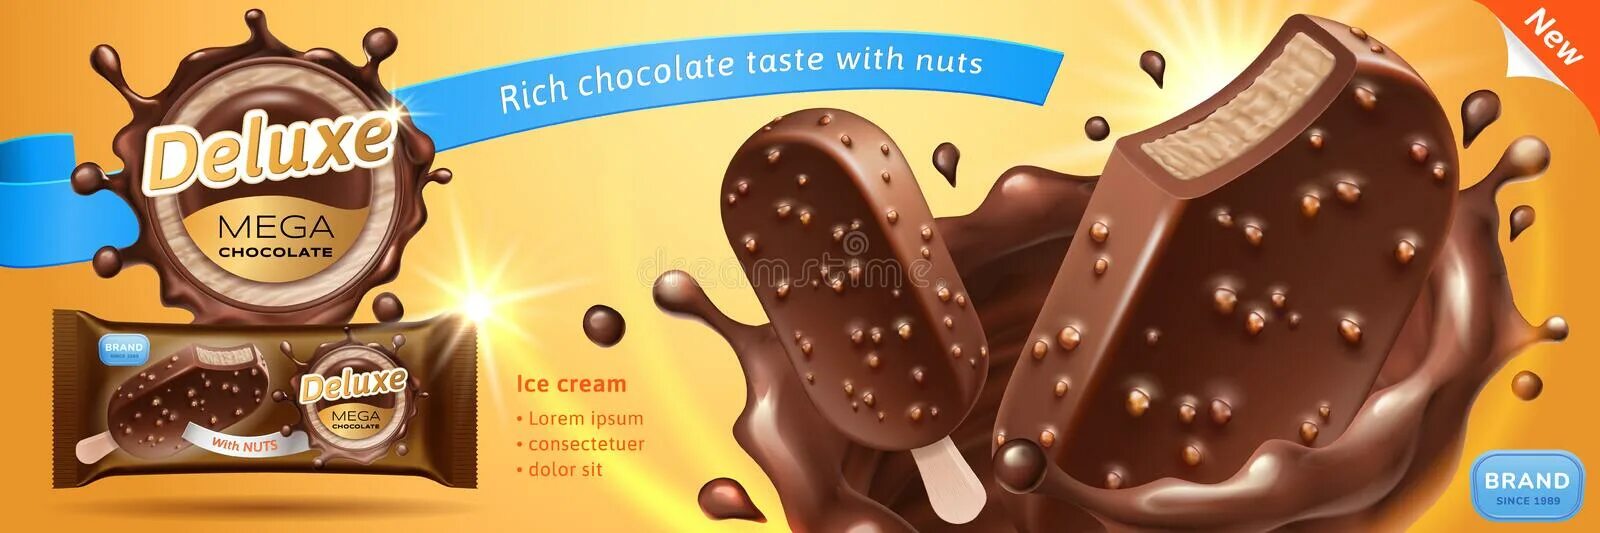 Айс де люкс шоколадный. Шоколад Делюкс. Айс Ле Люкс шоколадное. Шоколадка Deluxe. Айс Делюкс шоколадный.